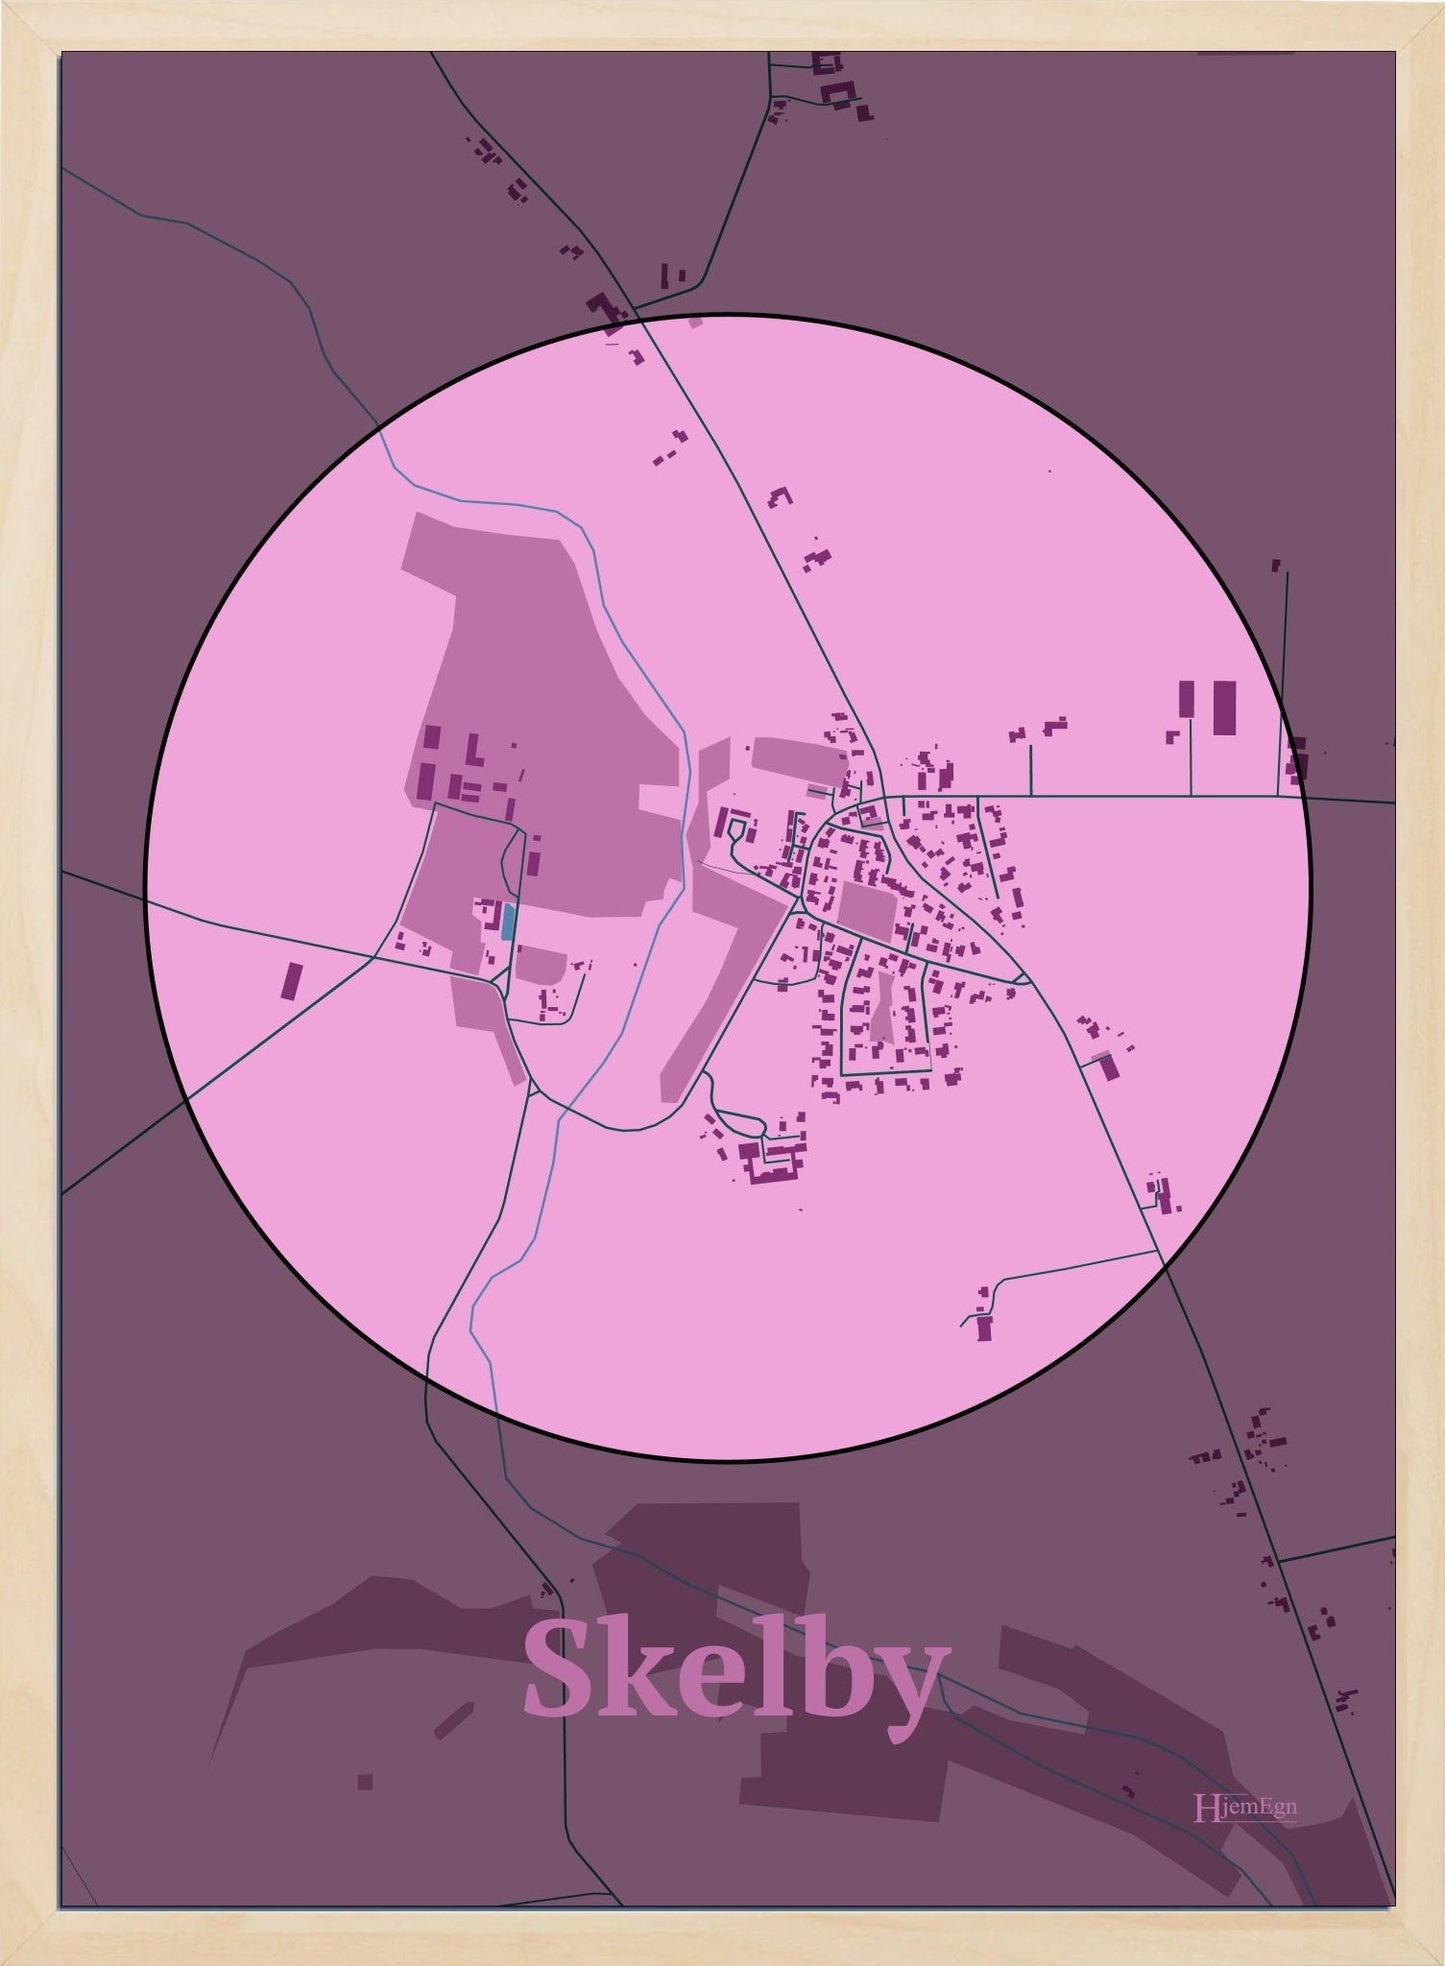 Skelby plakat i farve pastel rød og HjemEgn.dk design centrum. Design bykort for Skelby